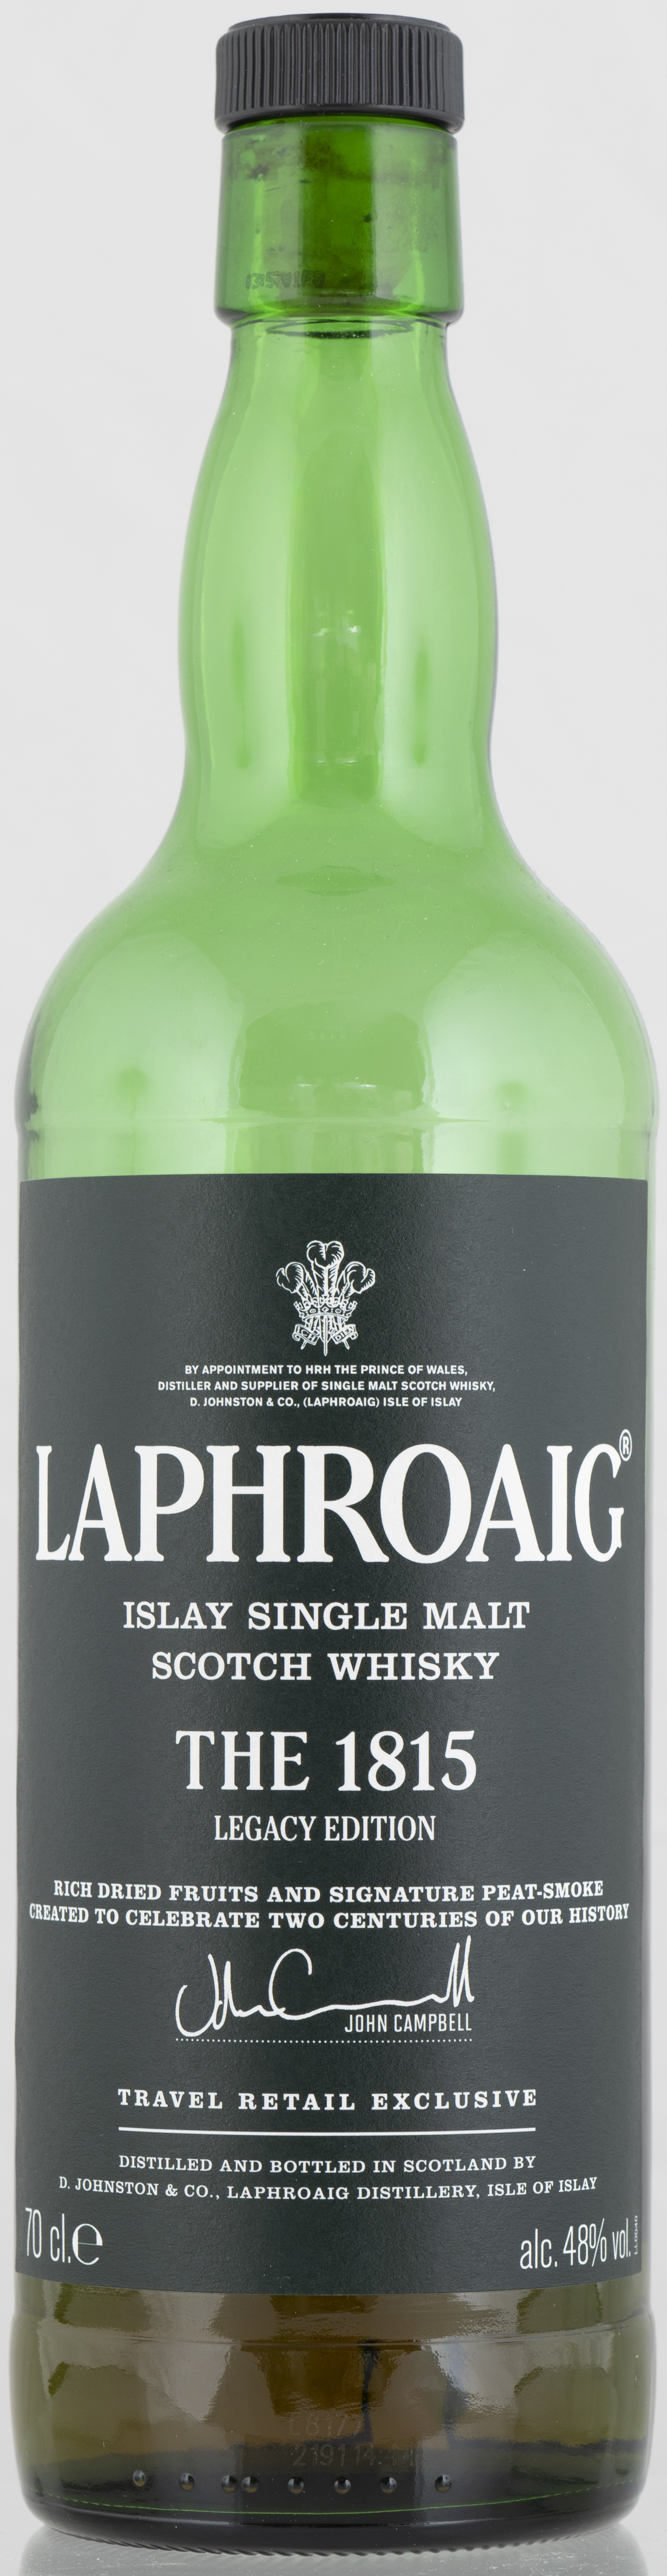 Billede: PHC_7240 - Laphroaig 1815 Legacy - bottle front.jpg